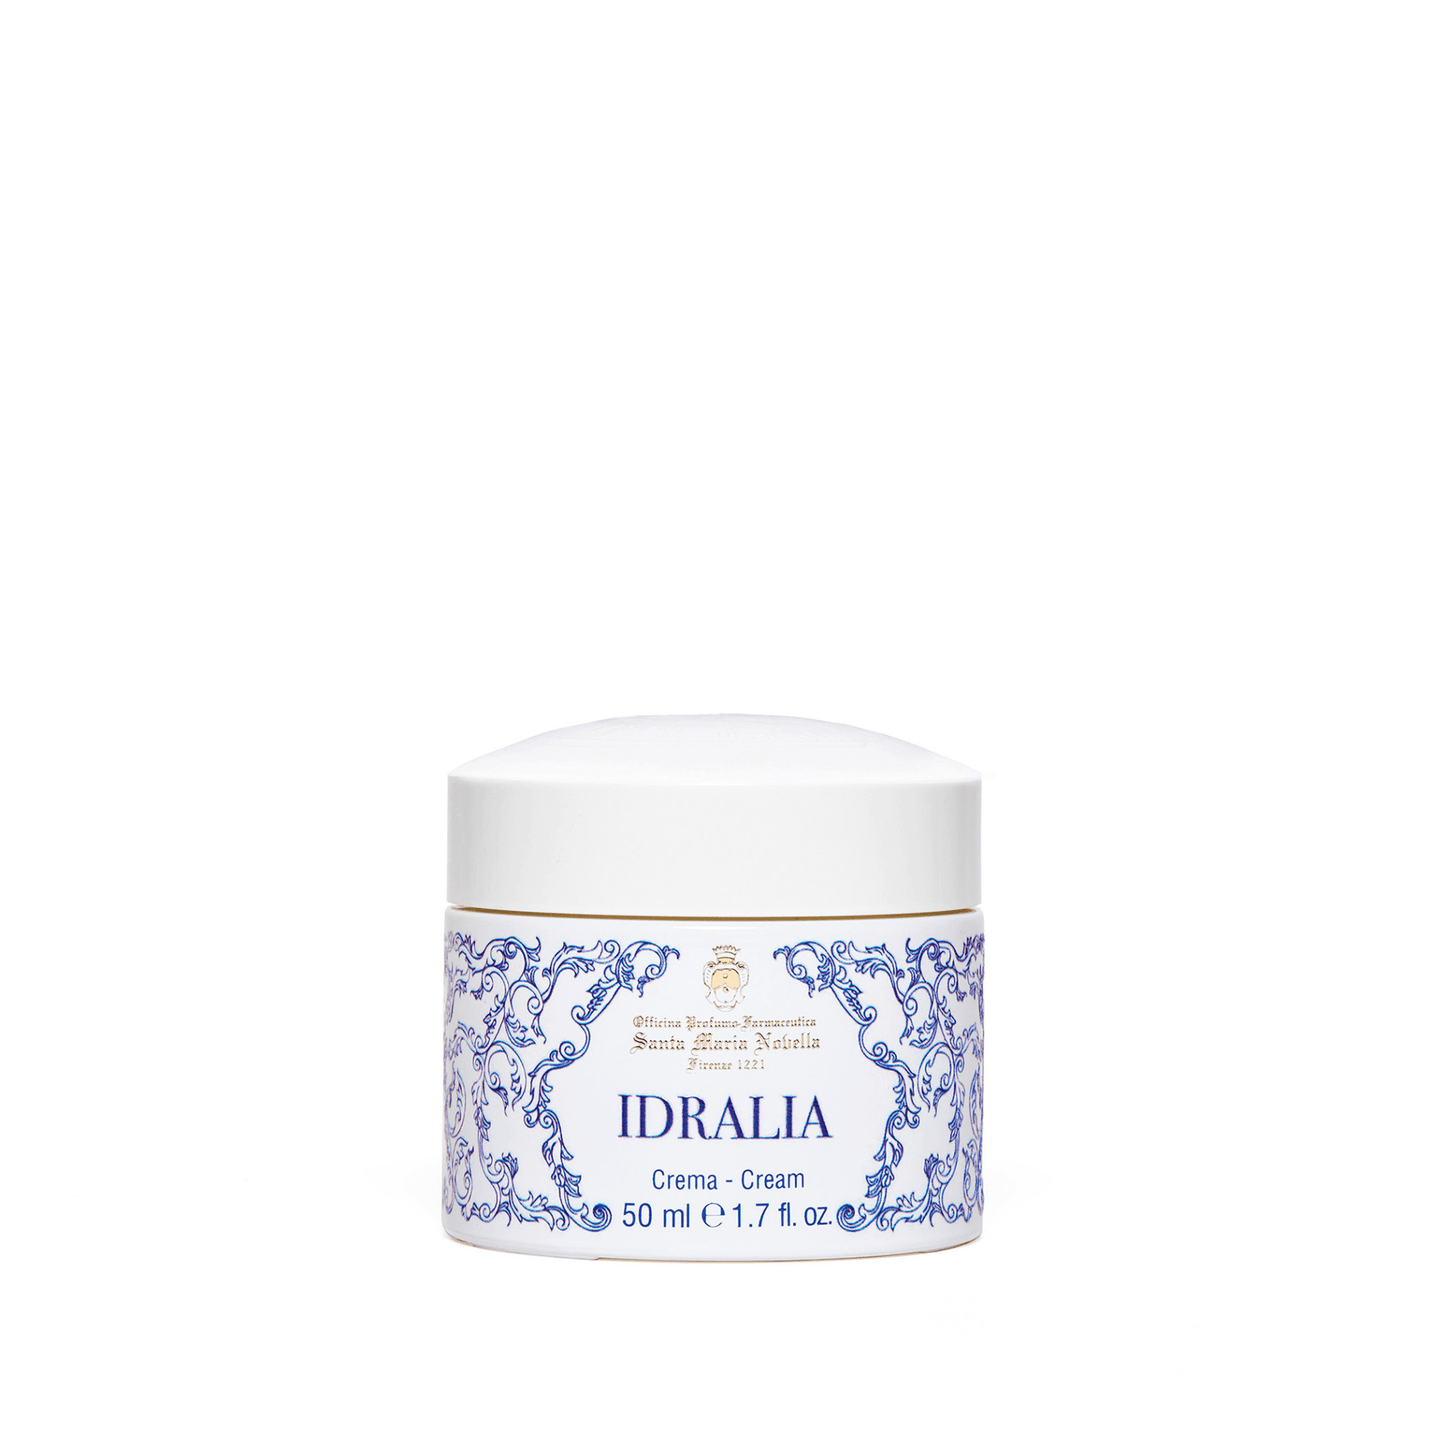 Primary Image of Idralia Cream (Crema Idralia)